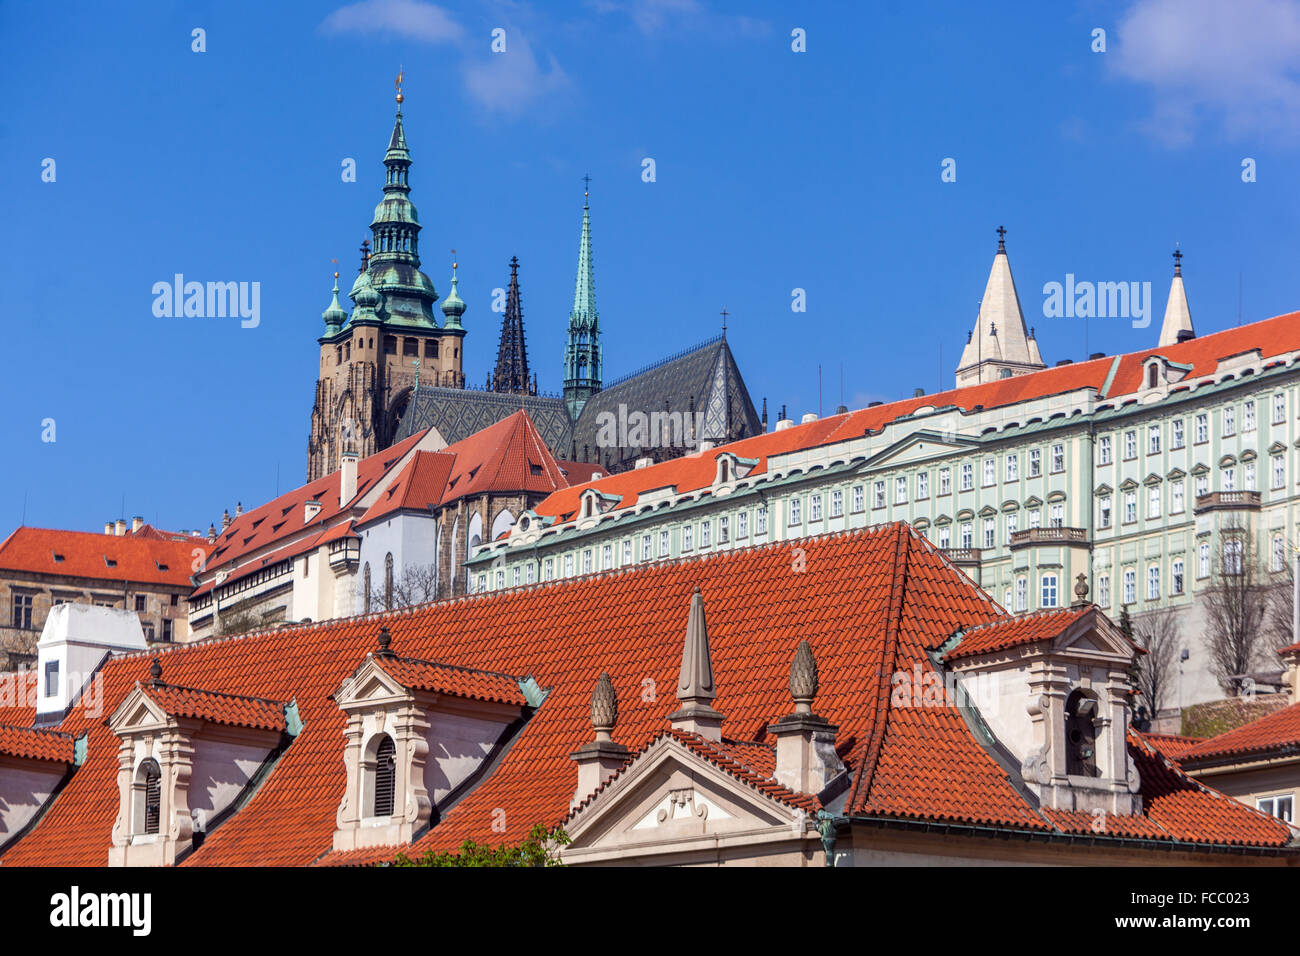 Die Prager Burg Hradschin, Prag, Tschechische Republik, Europa, weltweit bekannte Gebäude Stockfoto